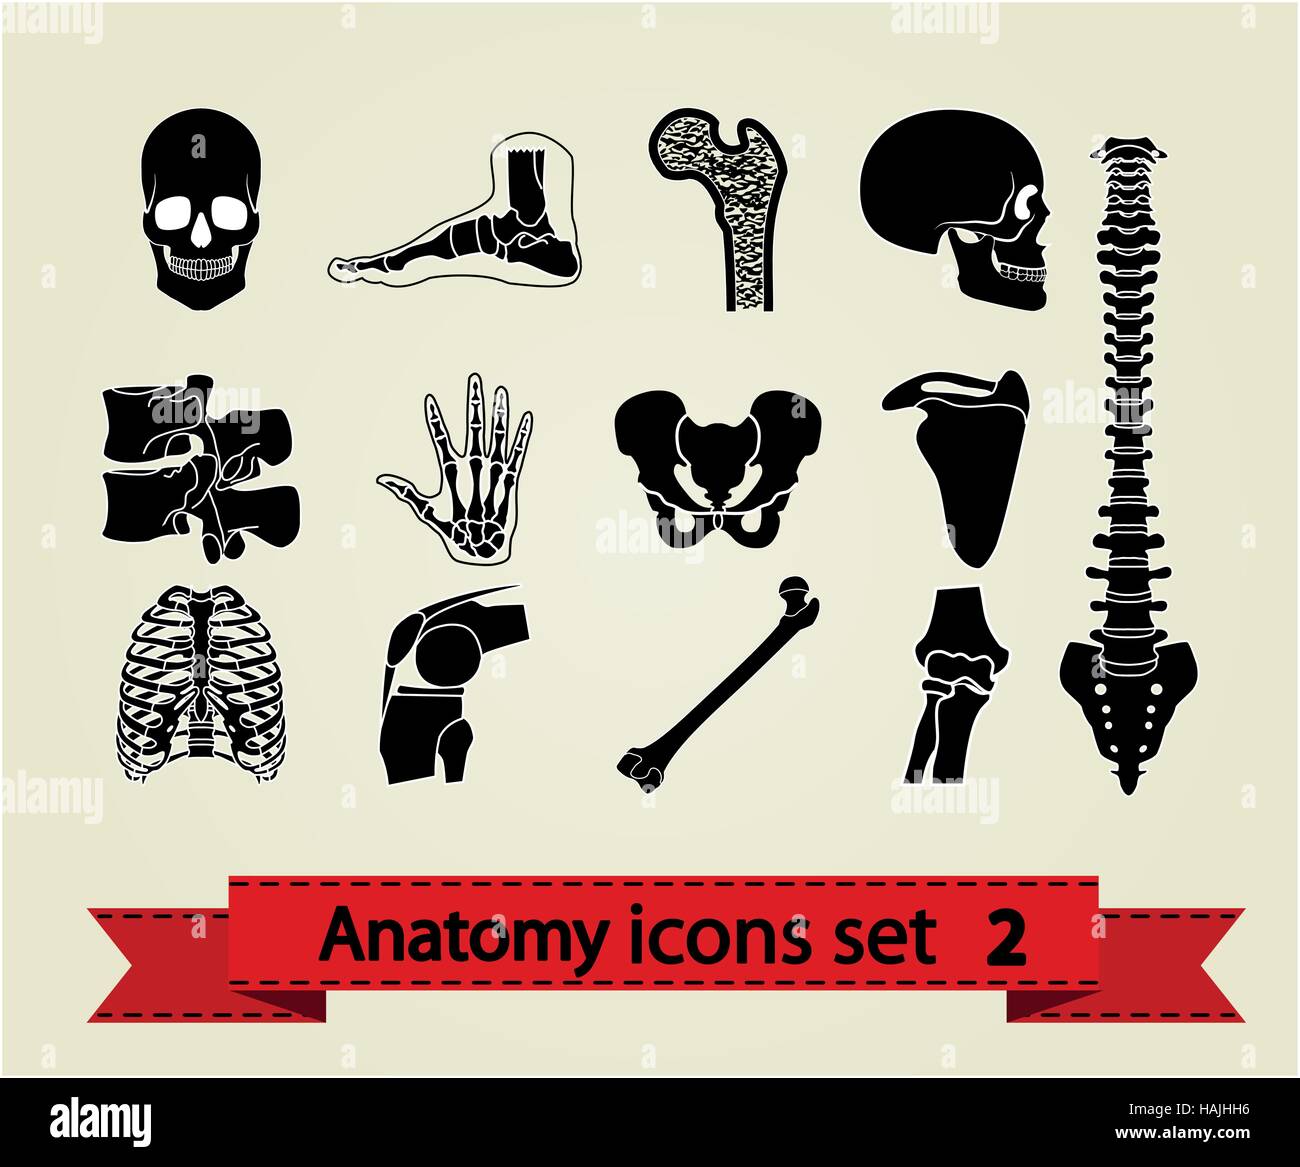 Les icônes de l'anatomie humaine. Illustration vecteur eps 8. Illustration de Vecteur